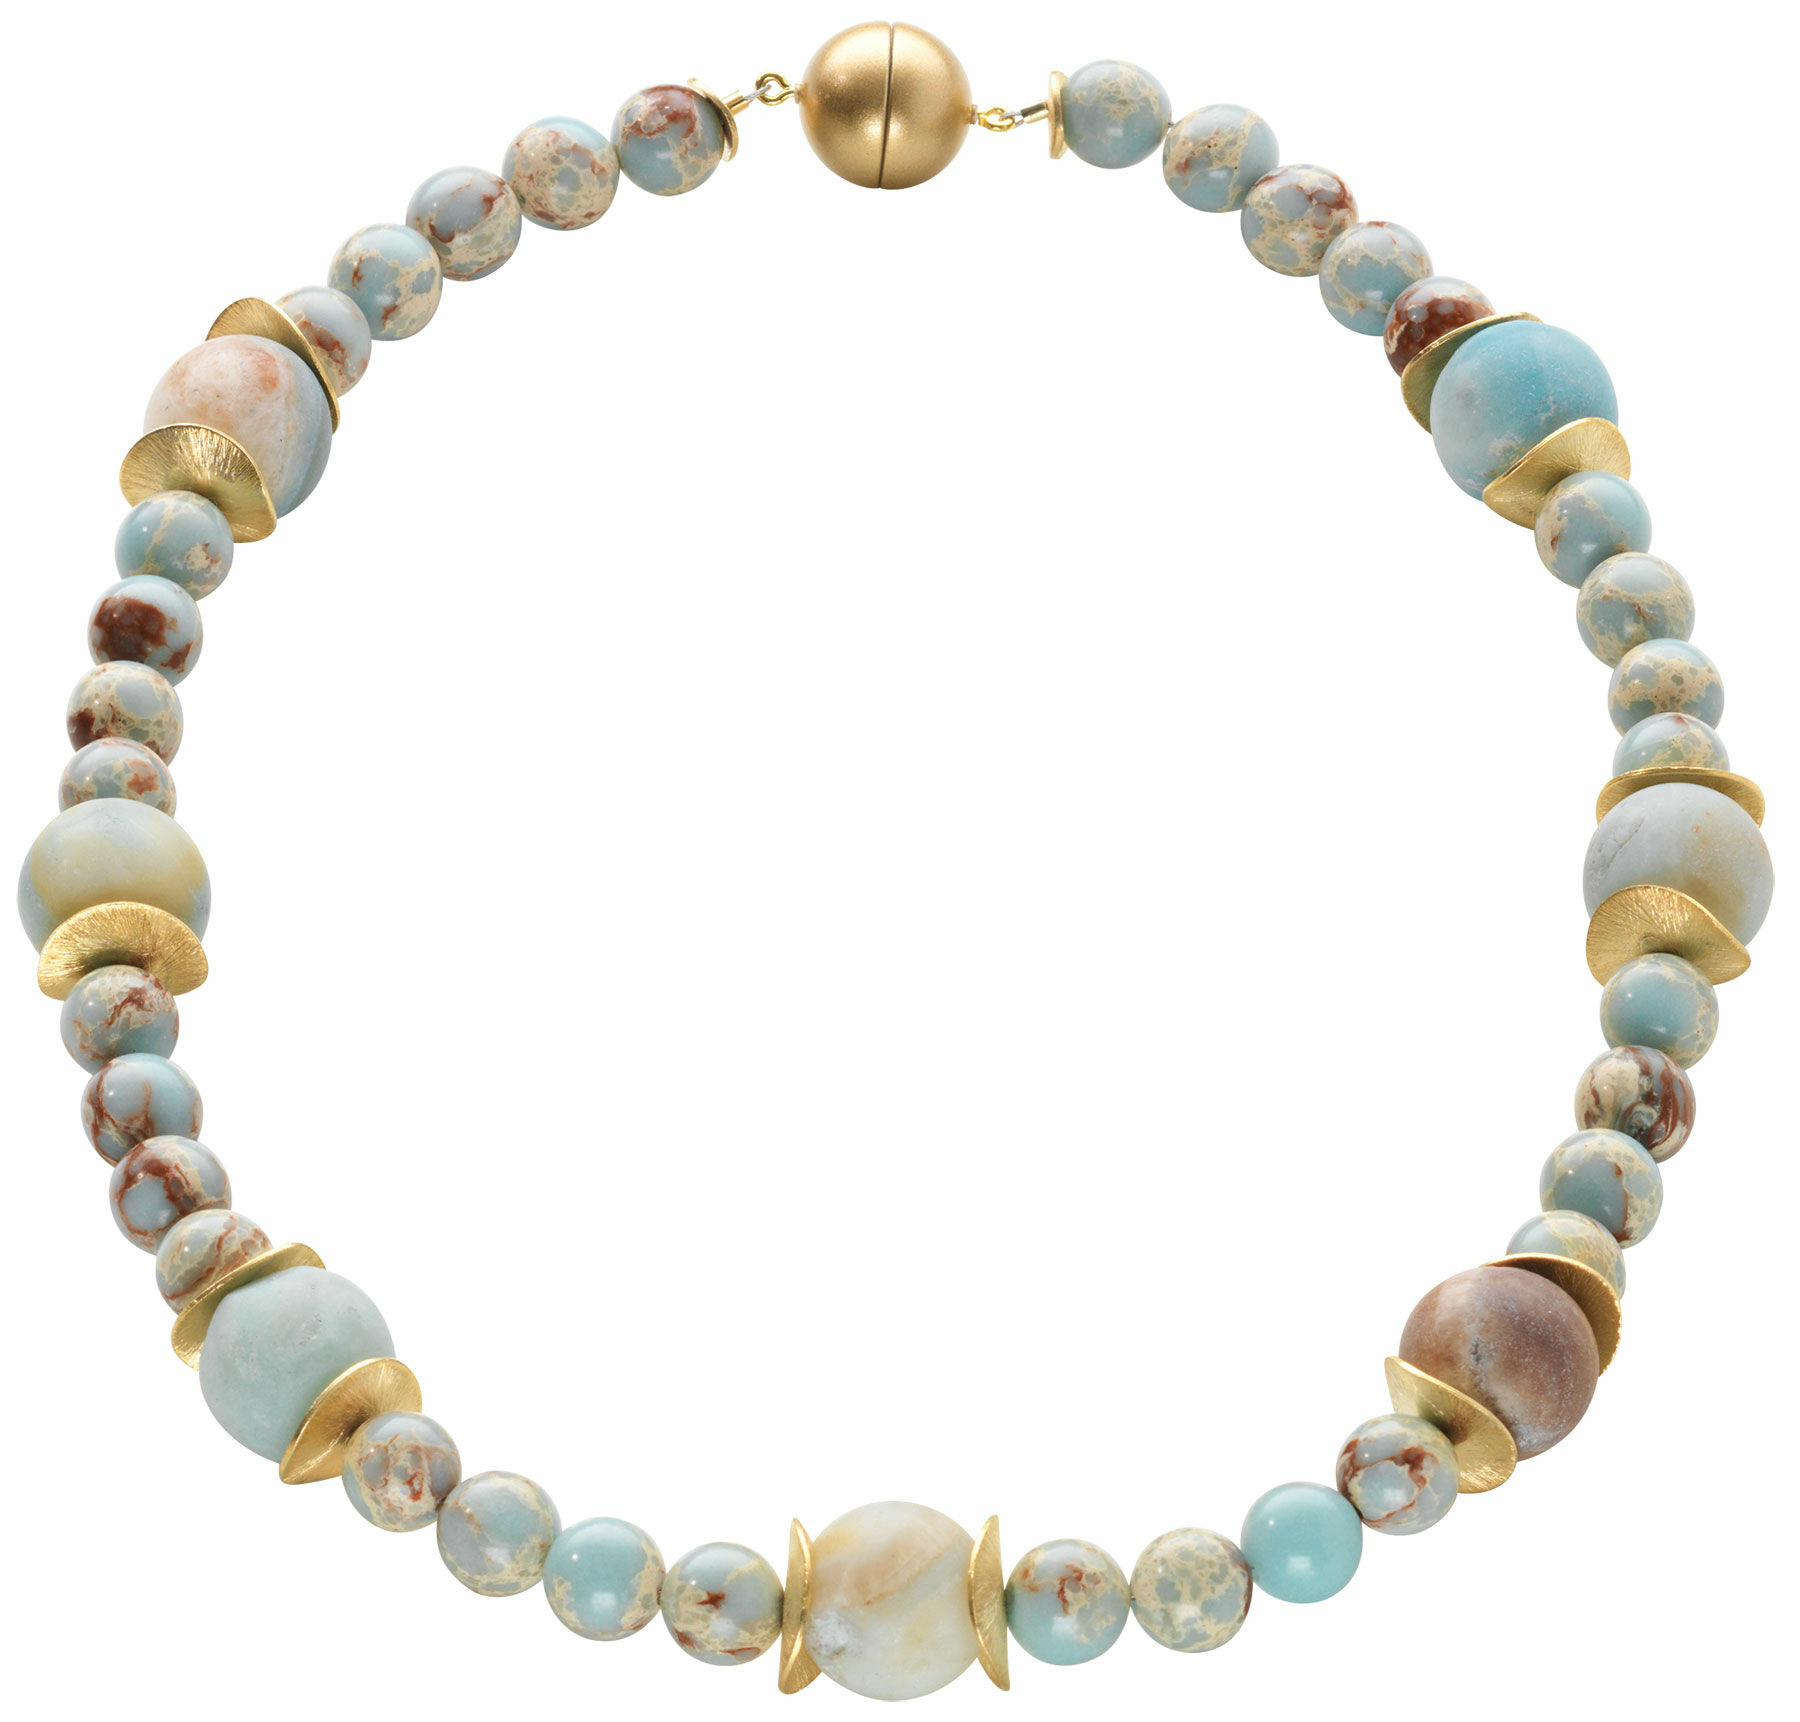 Collier de perles "Northern Lights" (aurores boréales)